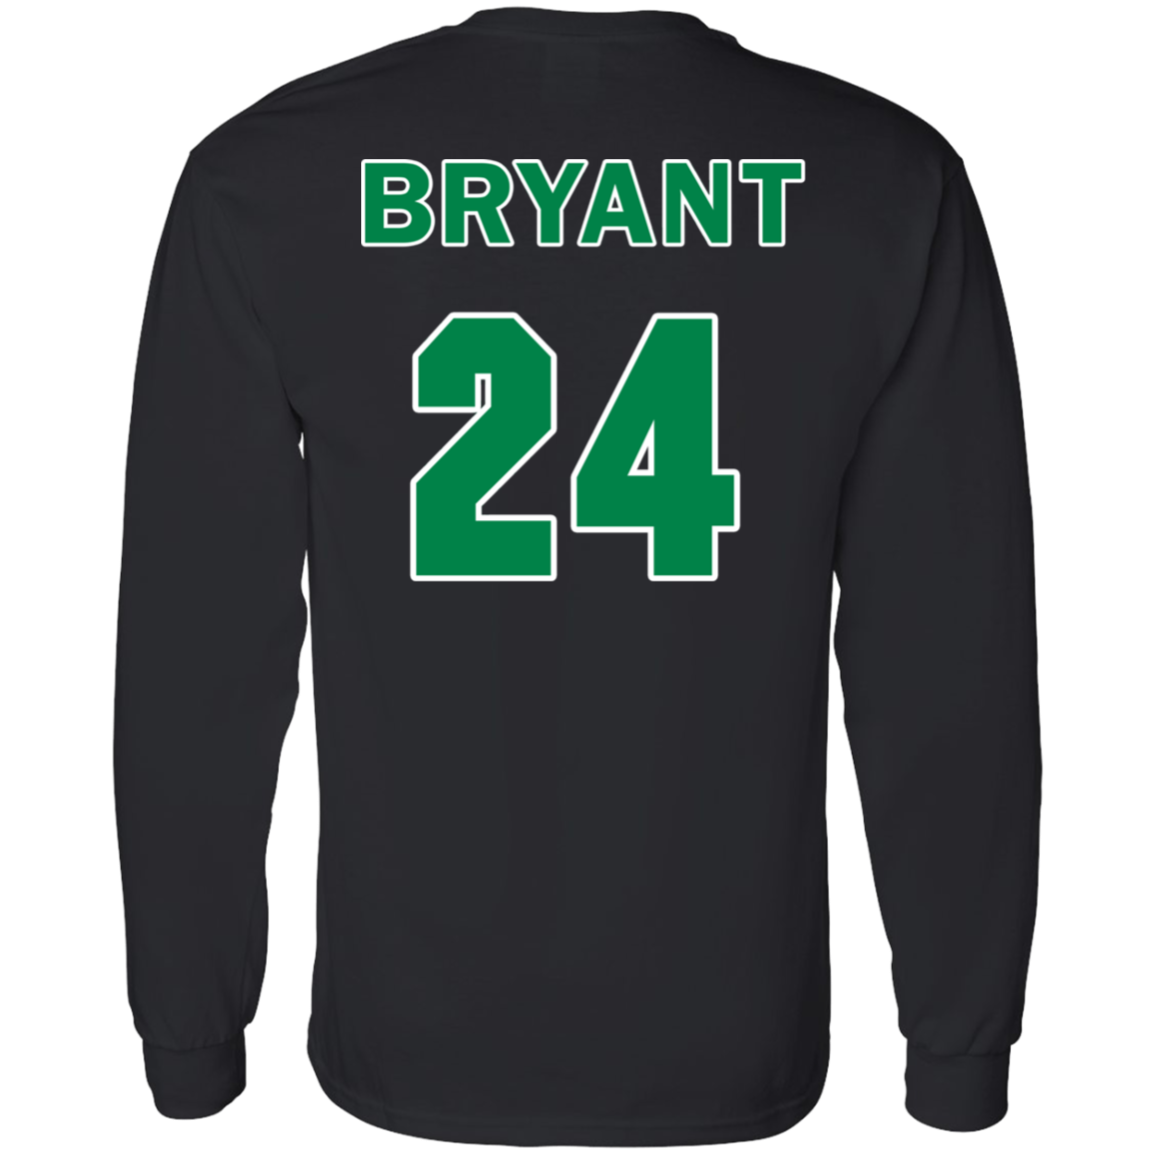 ArtichokeUSA Custom Design. RIP Kobe. Mamba Forever. Celtics / Lakers Fan Art Tribute. 100 % Cotton LS T-Shirt